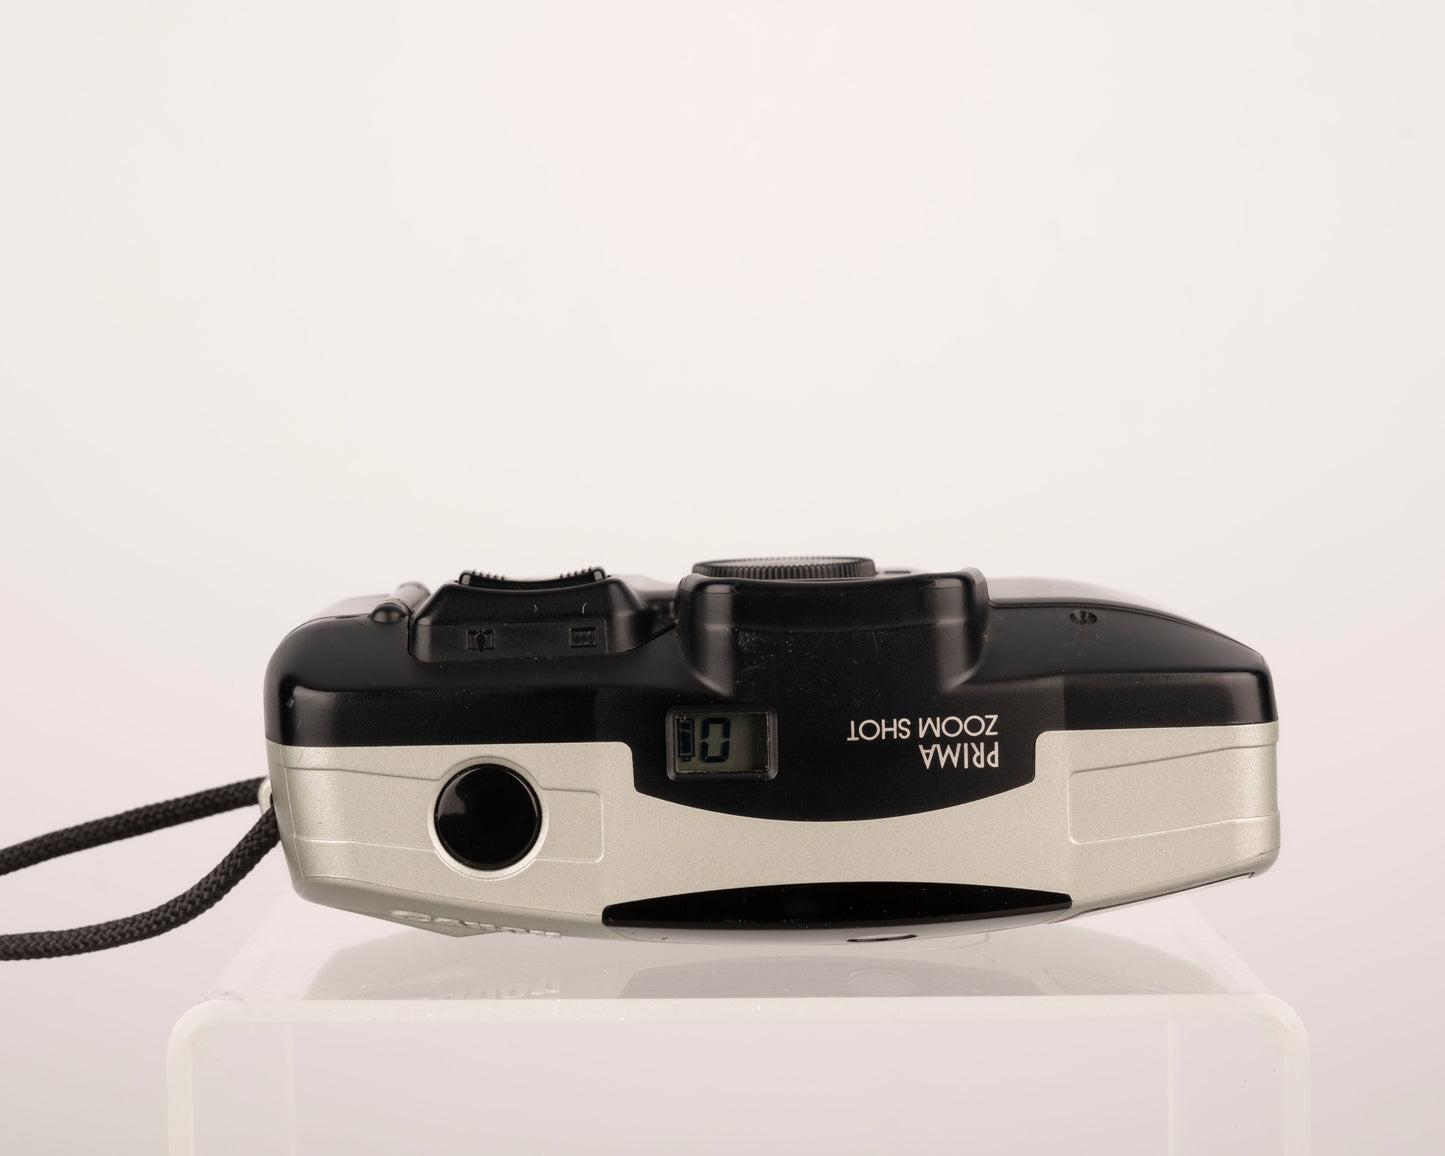 Canon Prima Zoom Shot 35mm film camera w/ case (serial 3626453)